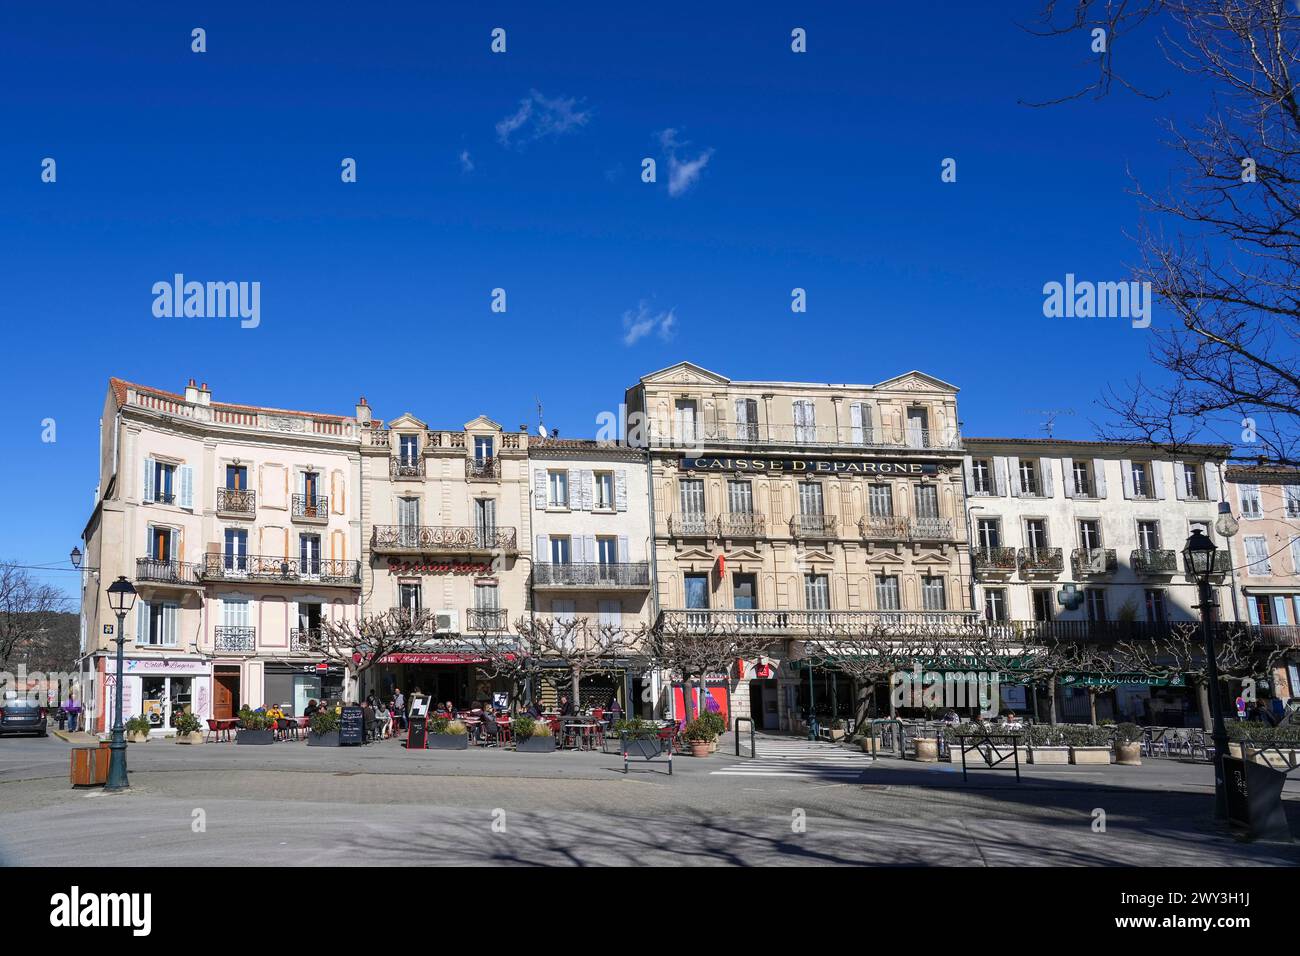 Marktplatz, Bistro, Bank, Restaurant, Place du Bourguet, Forcalquier, Departement Alpes-de-Haute-Provence, Frankreich Stockfoto